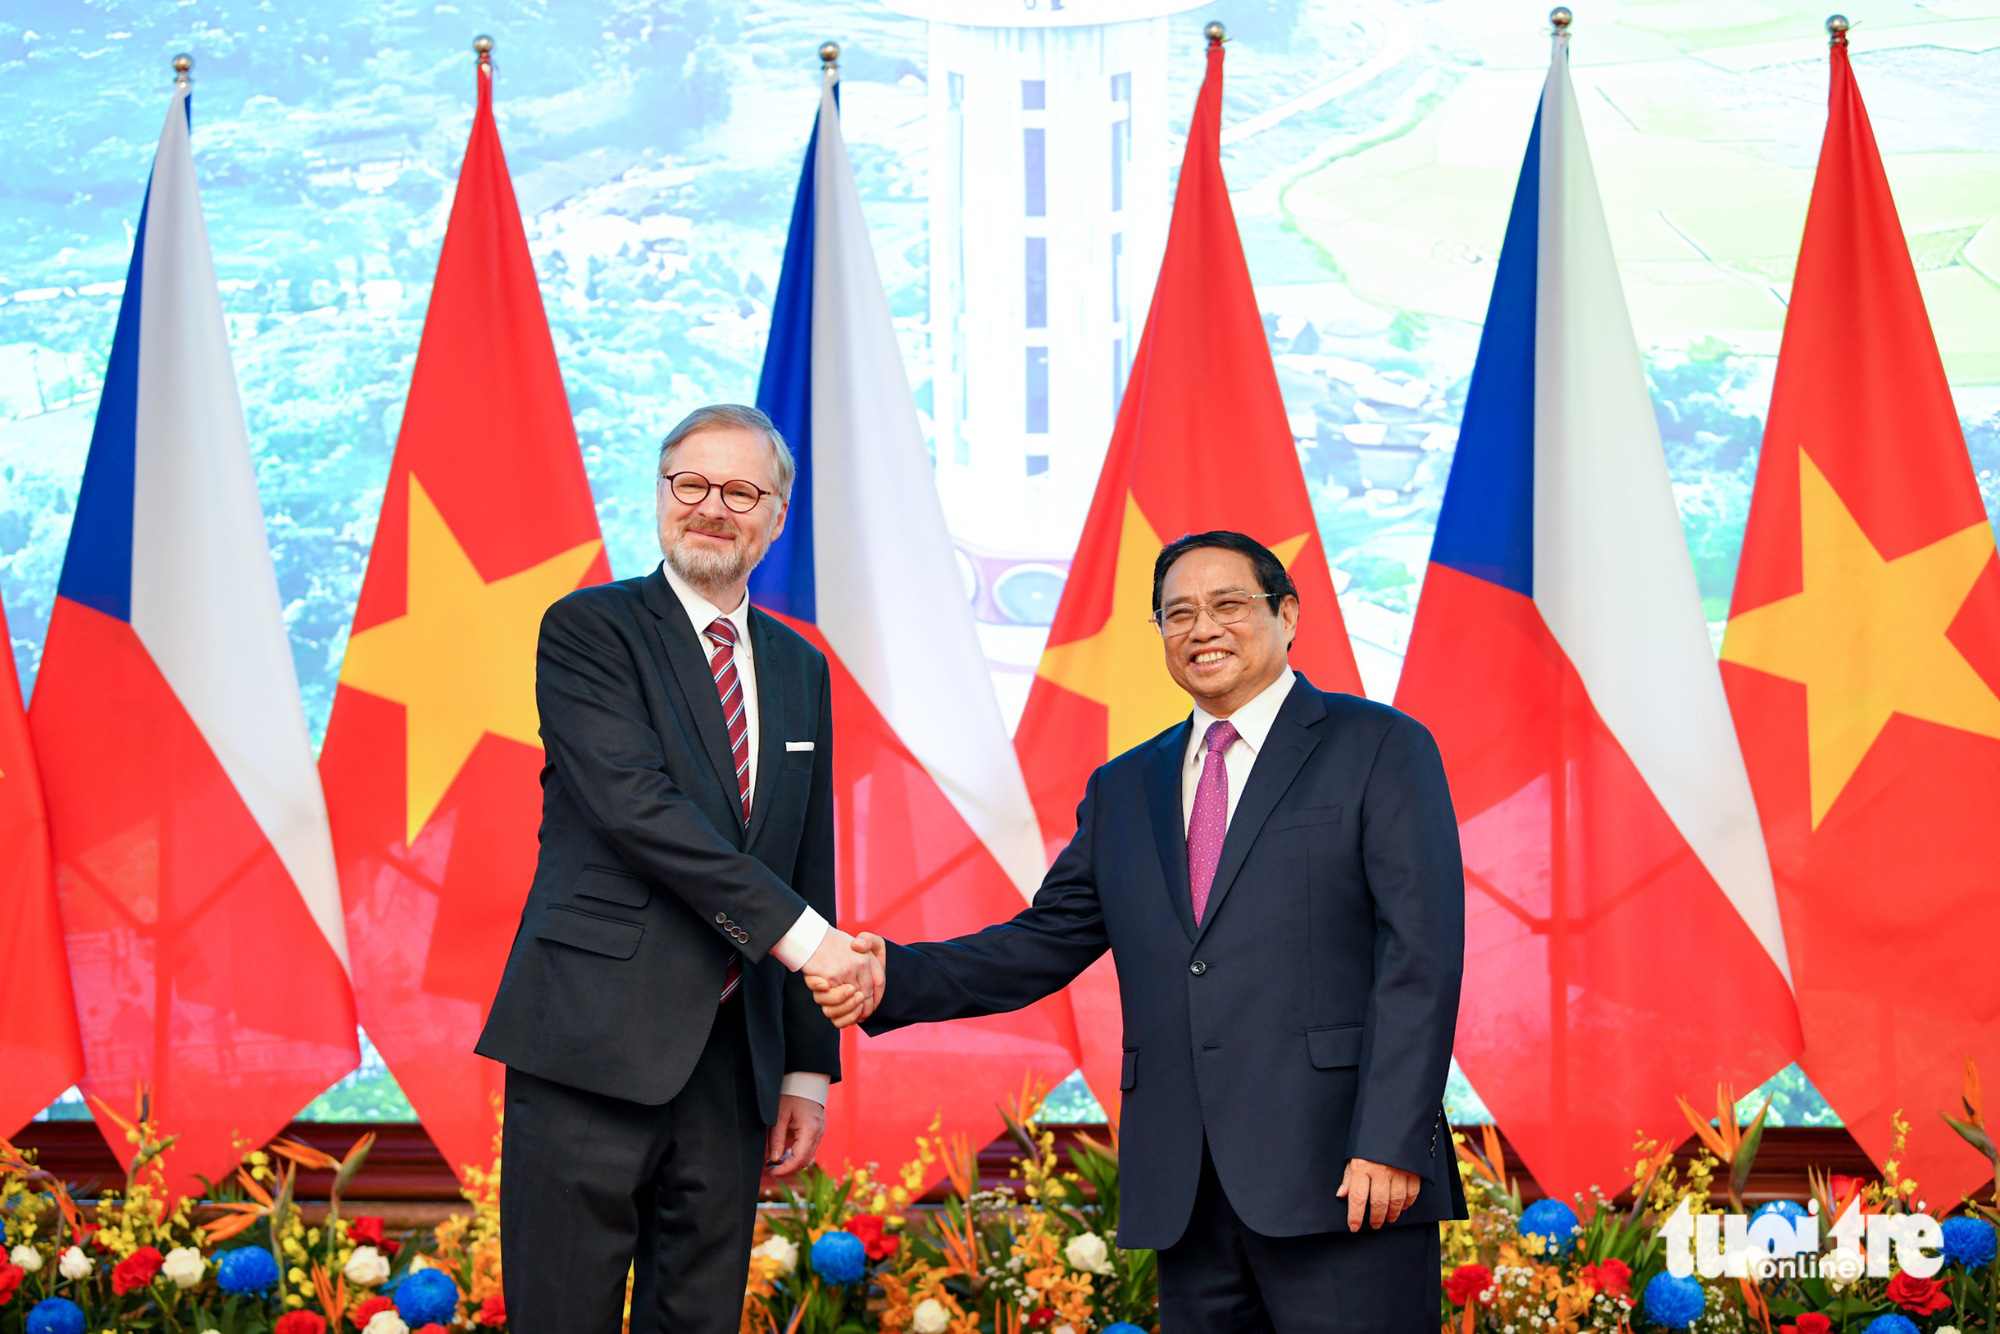 Thủ tướng Phạm Minh Chính bắt tay Thủ tướng Czech Petr Fiala trước hội đàm - Ảnh: NAM TRẦN